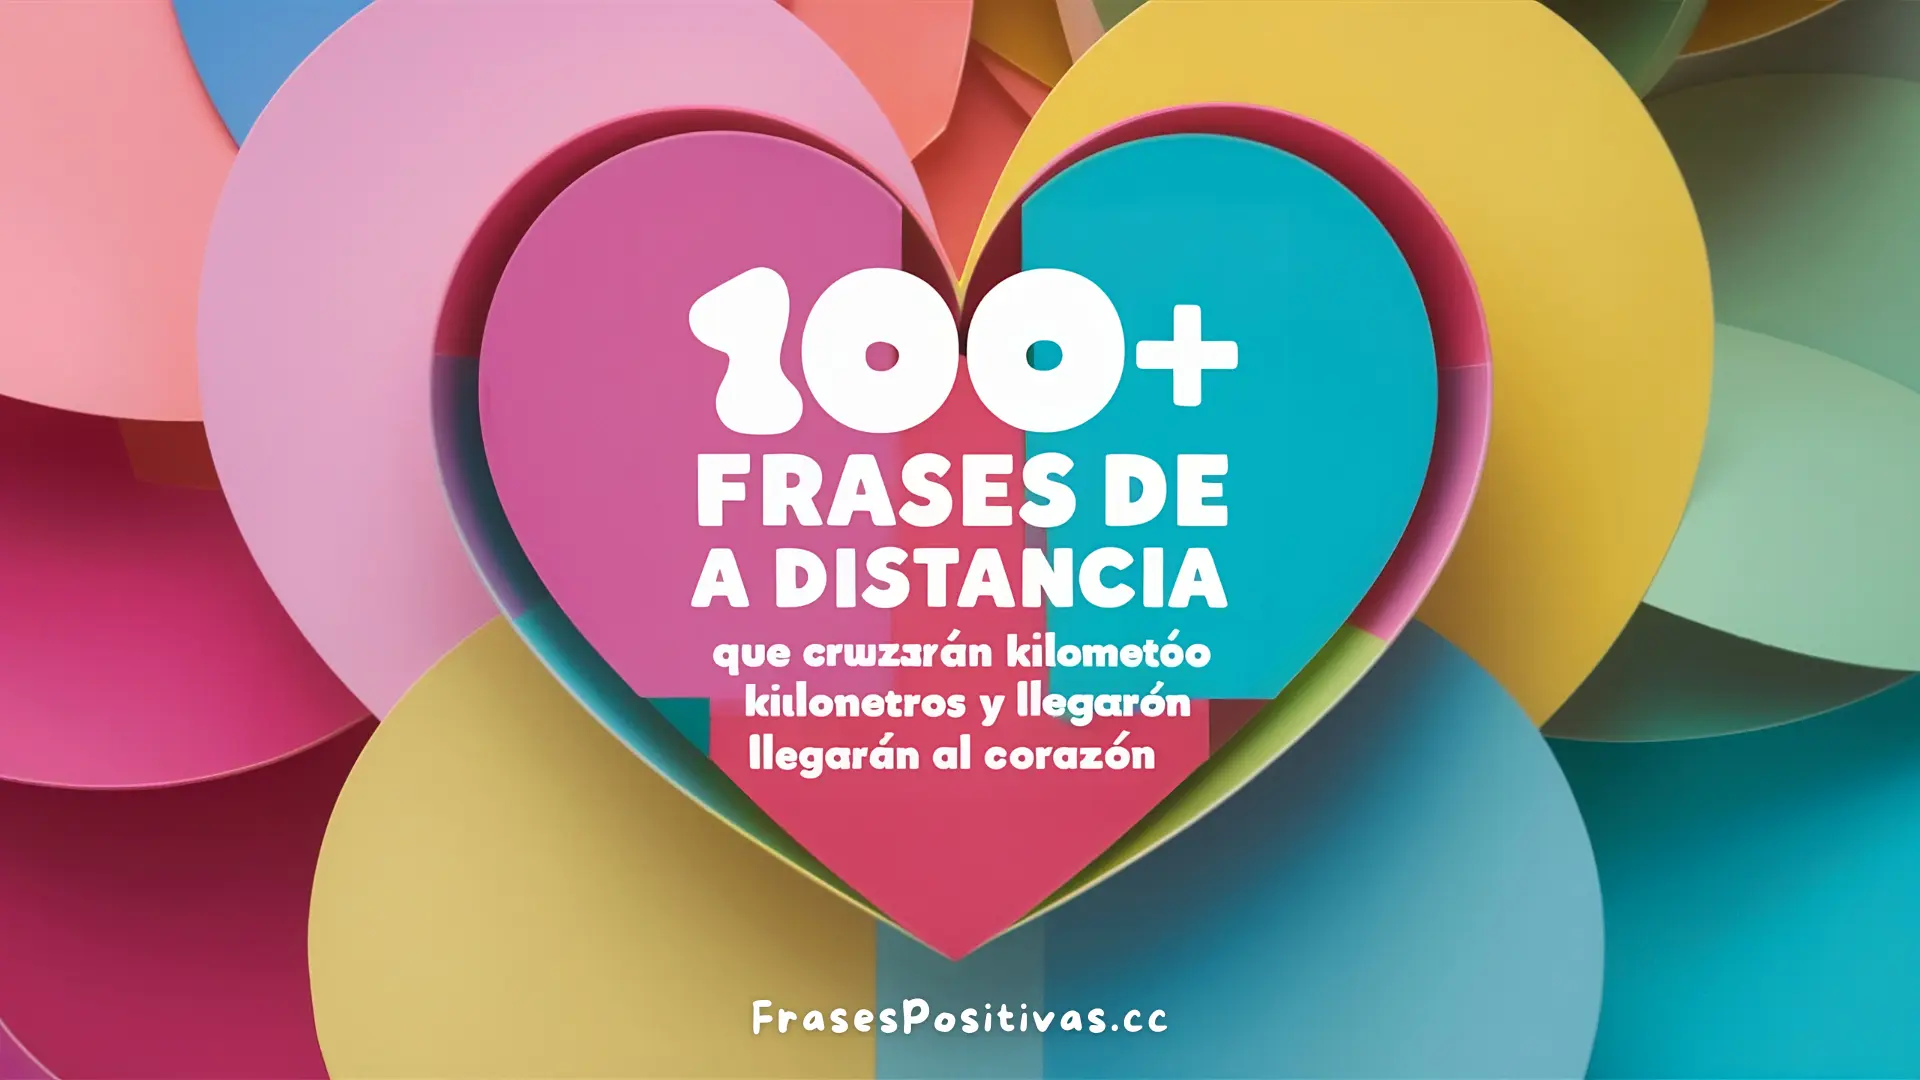 100+ Frases de Amor a Distancia: Románticas y Motivadoras (+ Imágenes)